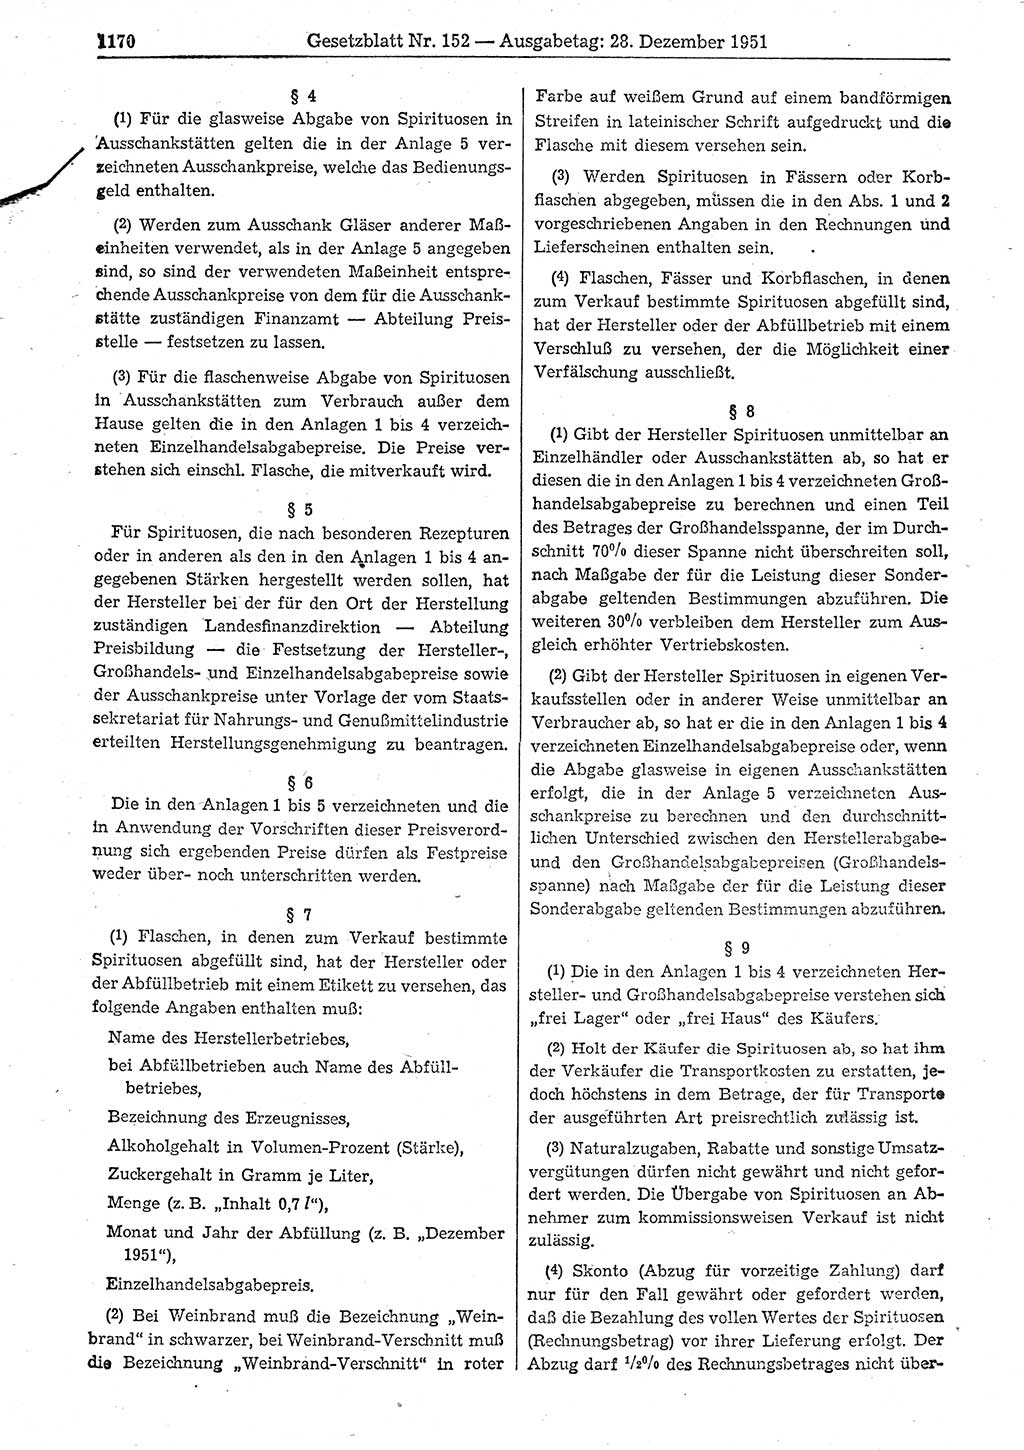 Gesetzblatt (GBl.) der Deutschen Demokratischen Republik (DDR) 1951, Seite 1170 (GBl. DDR 1951, S. 1170)